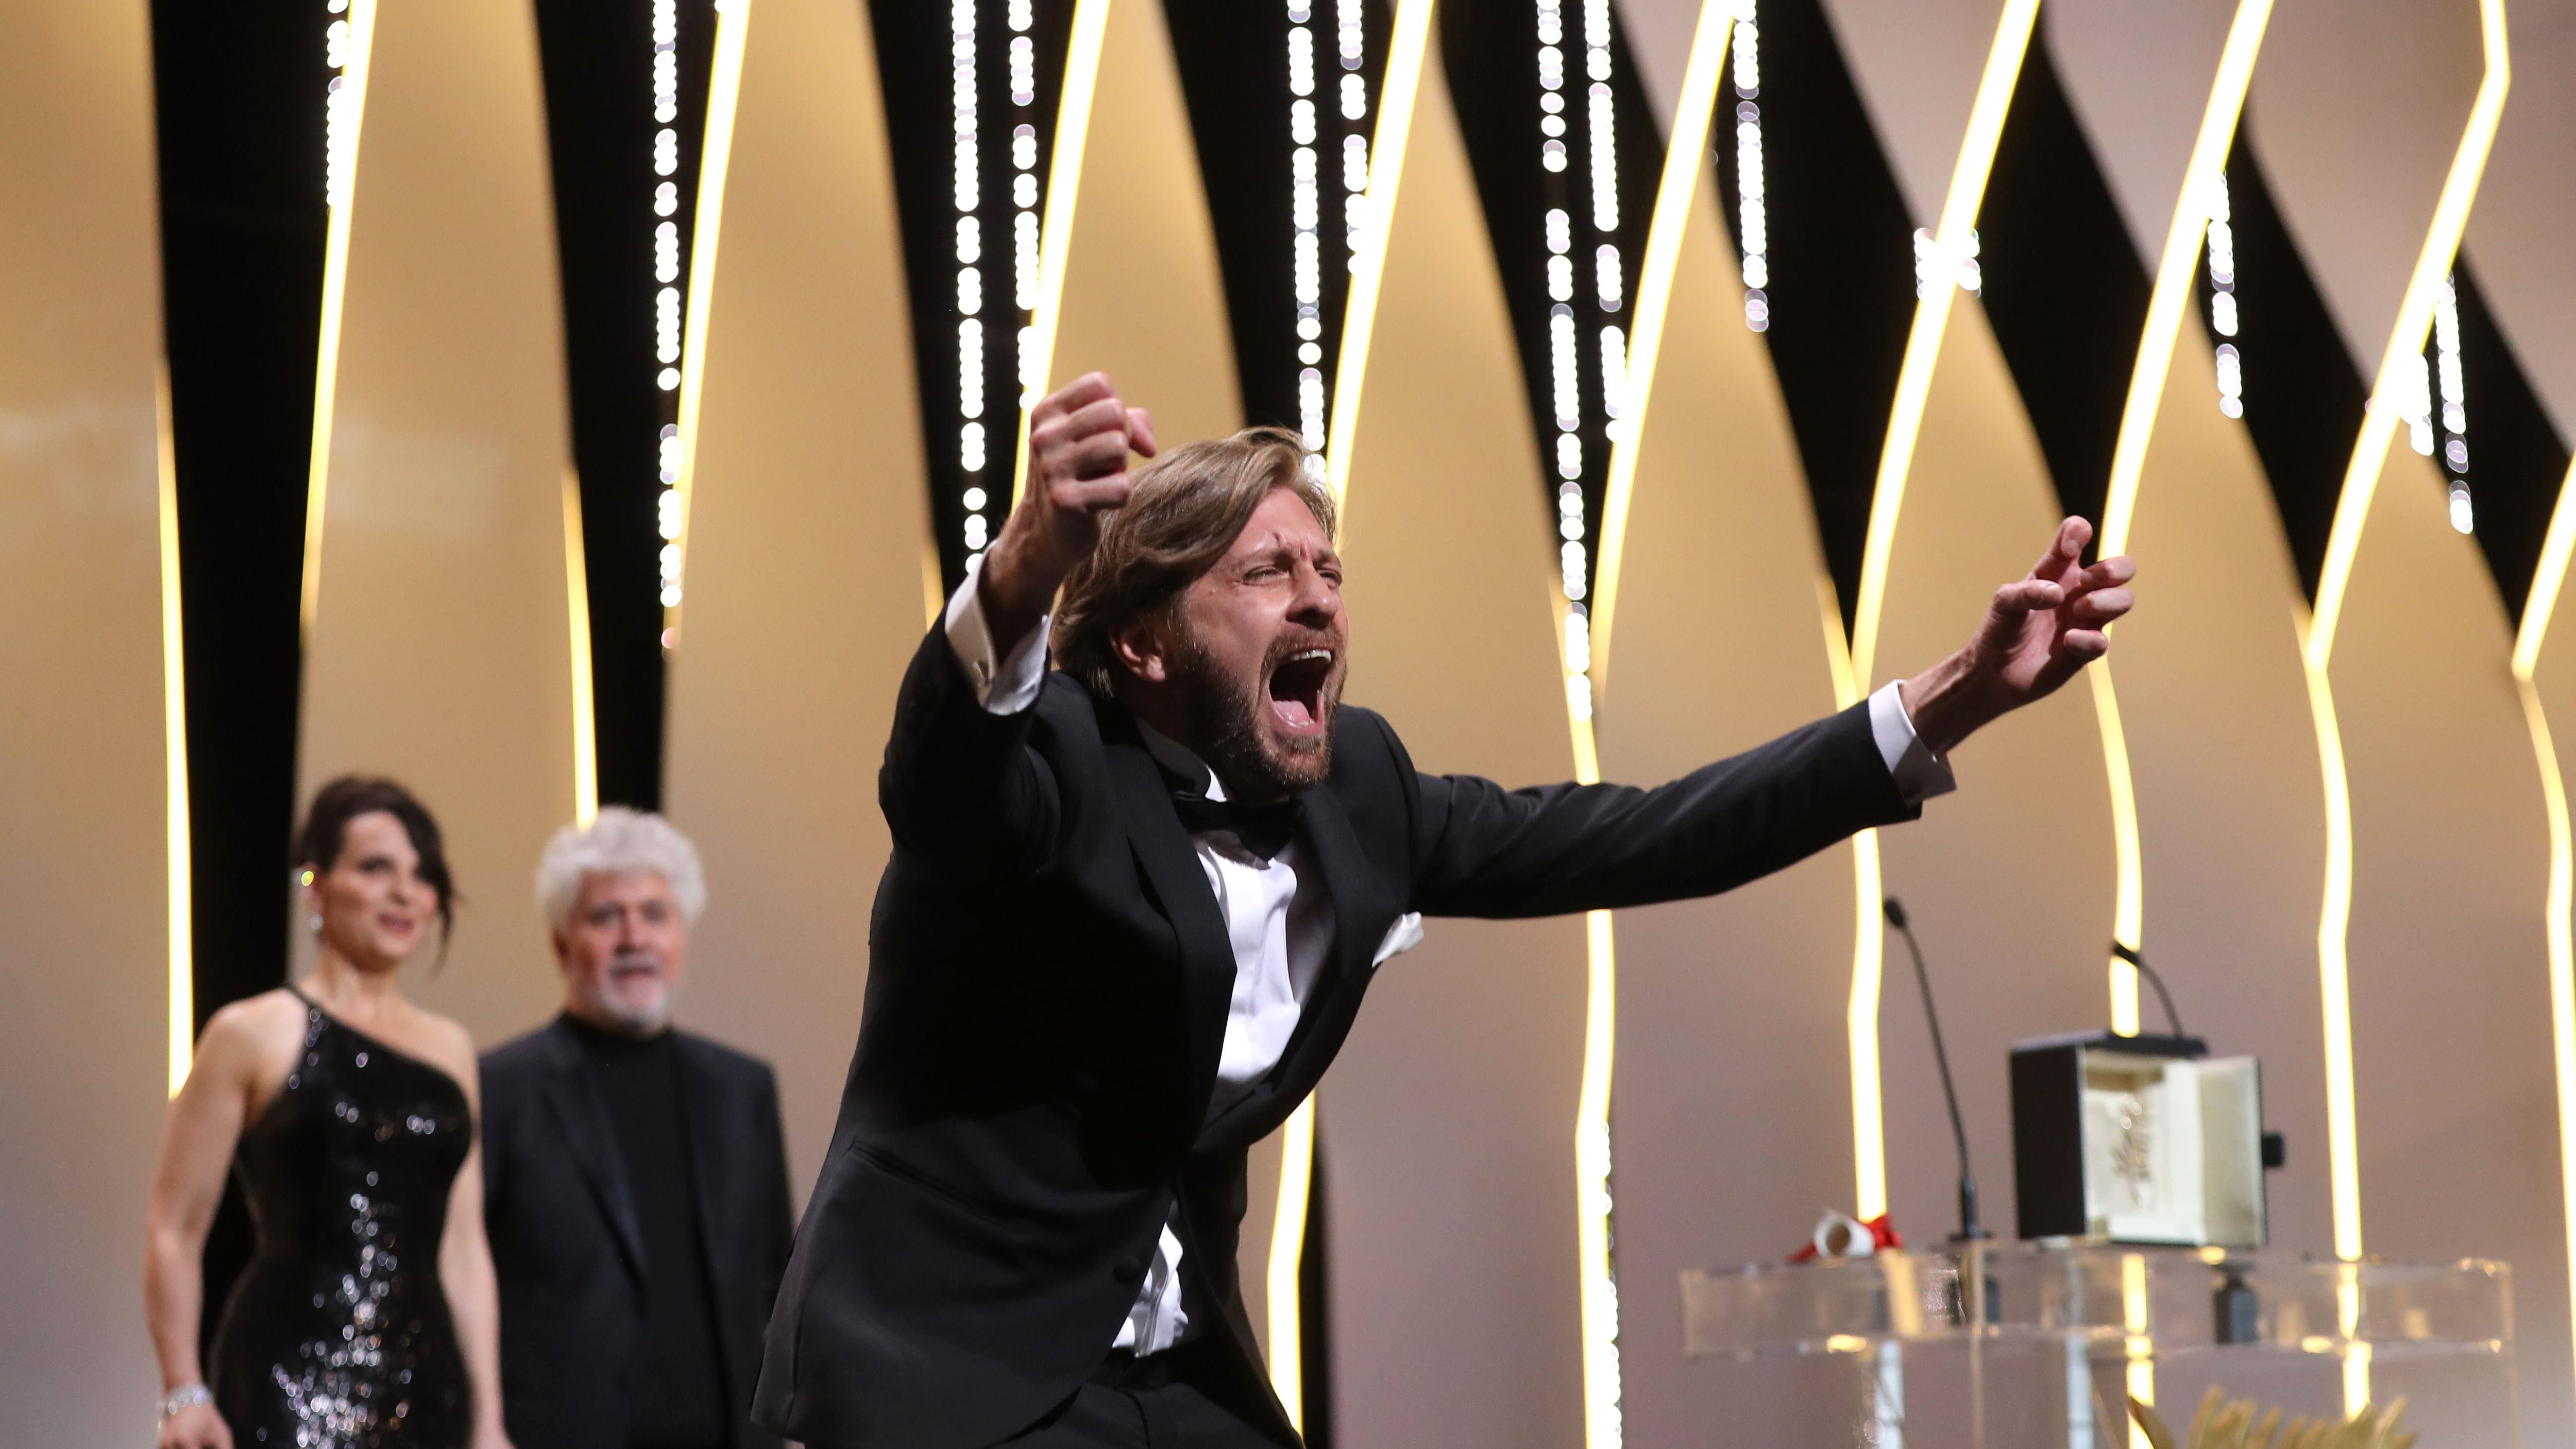 Cannes : la Palme d'or est attribuée à The Square du Suédois Ruben Östlund